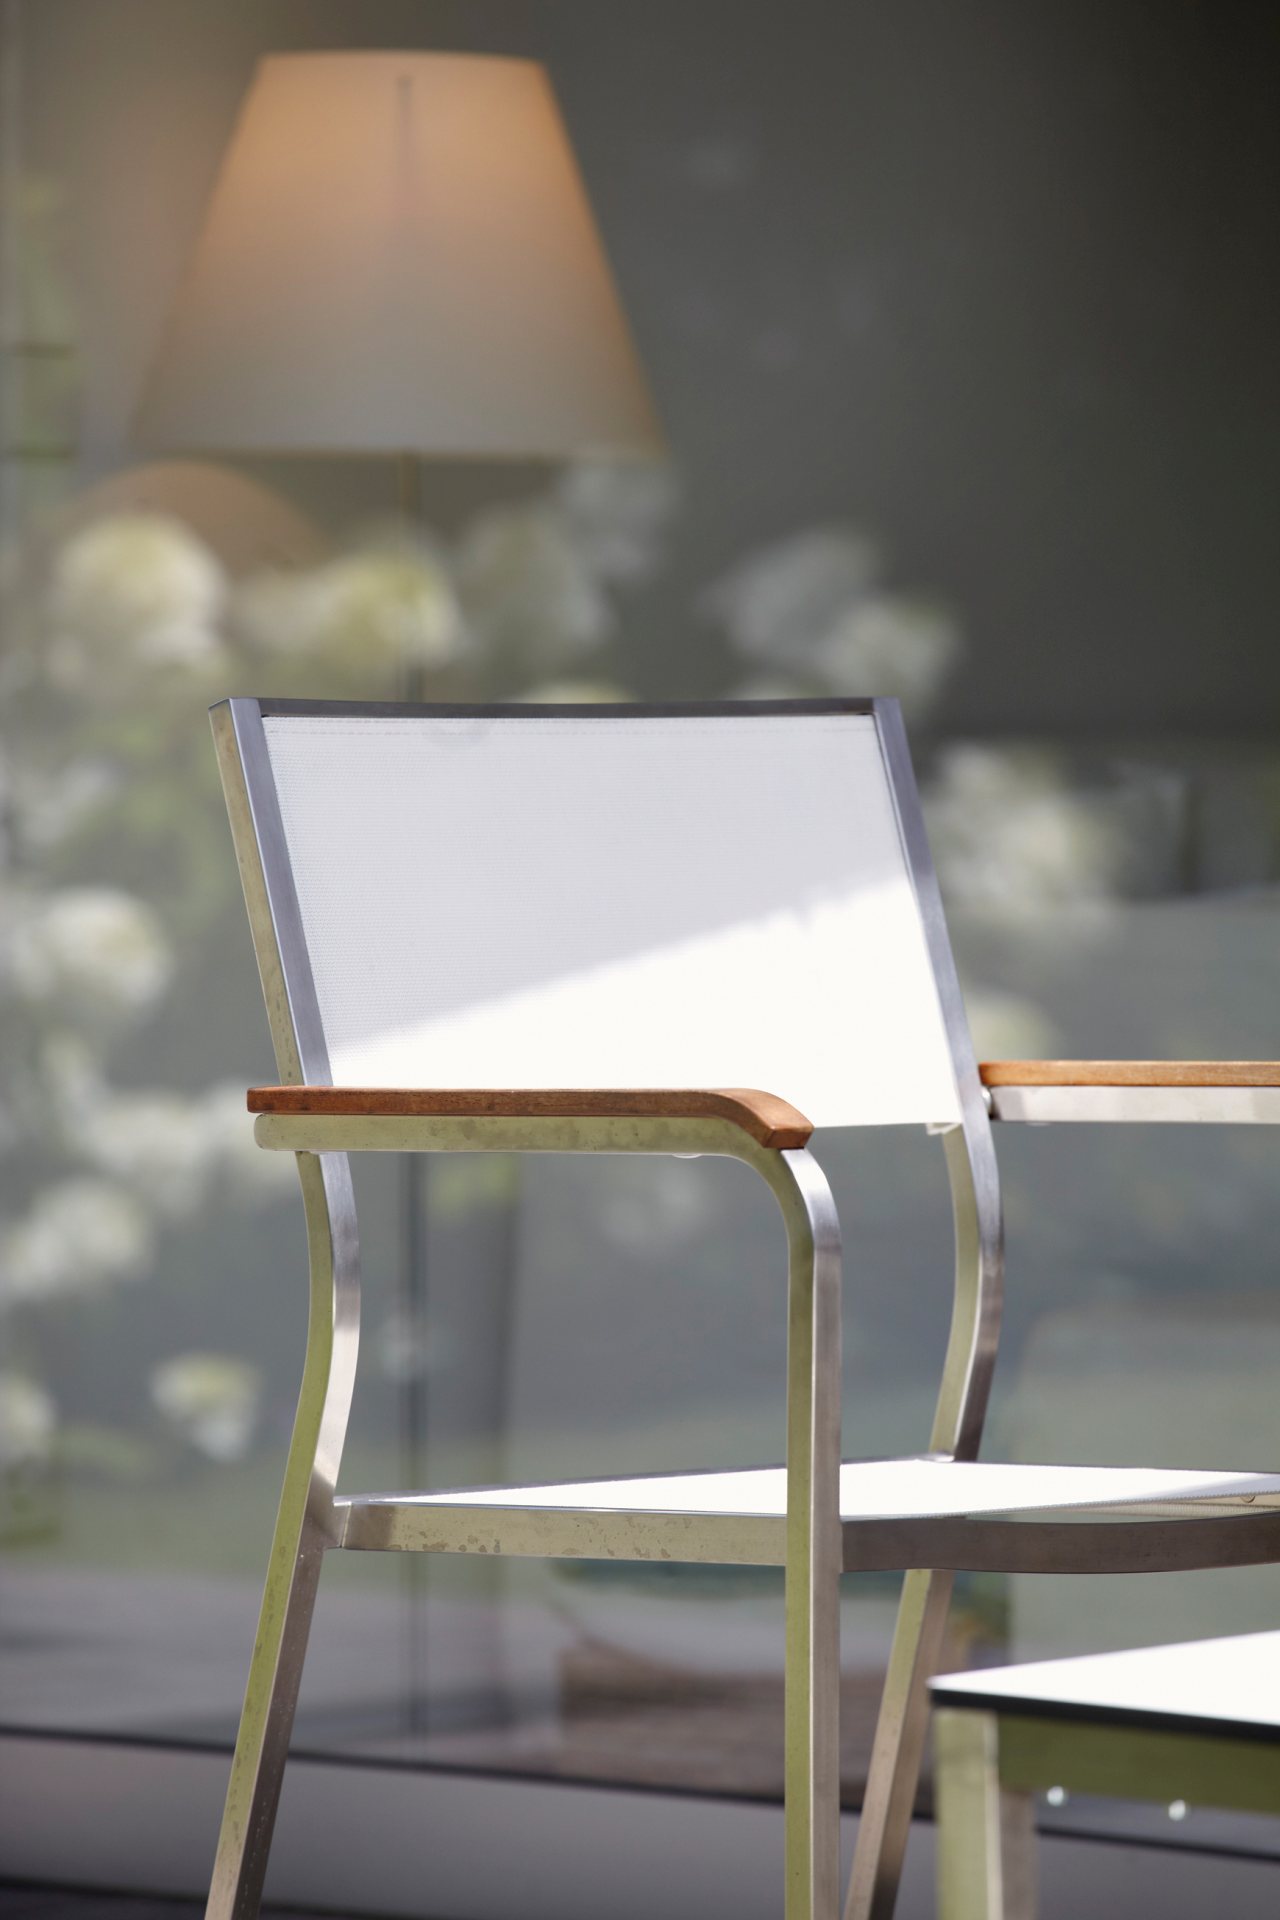 Der Stilvolle und moderne Gartensessel Lux wurde von der Marke Jan Kurtz hergestellt. Die Materialien des Sessels sind Edelstahl und Kunststoff, somit ist der Sessel auch für den Garten-Bereich geeigent. Die Farbe ist Weiß.